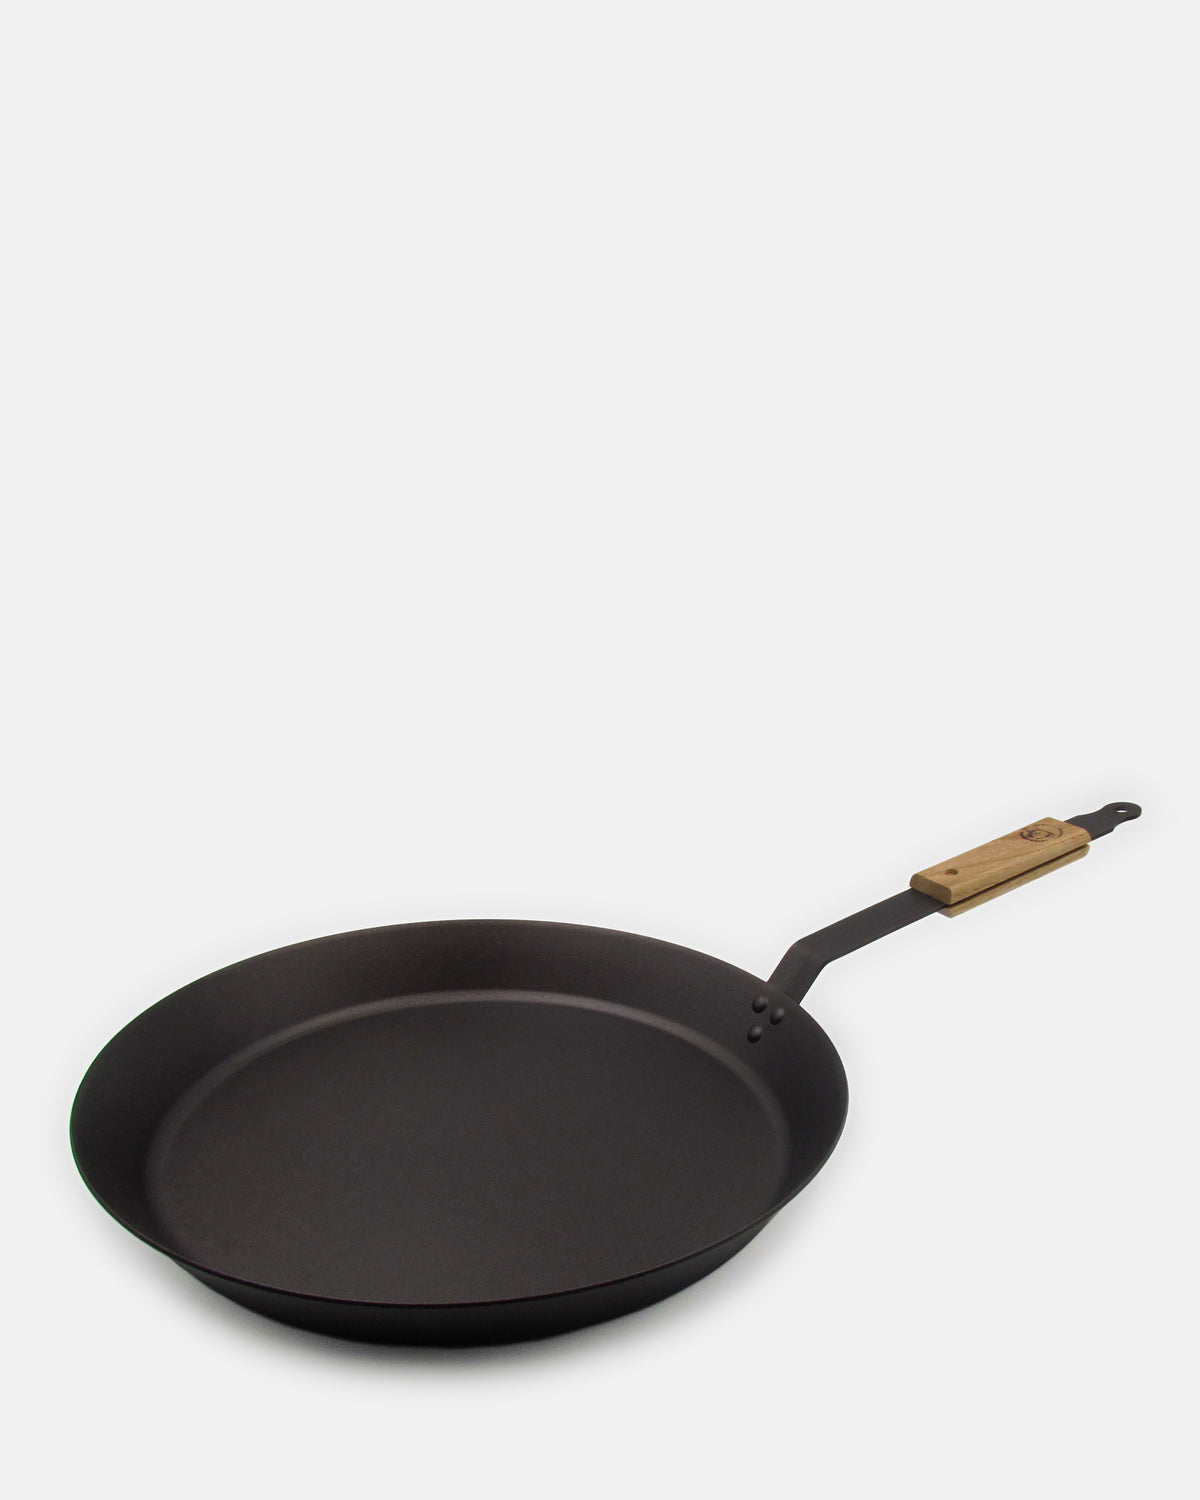 14 inch (36cm) Spun Iron Frying Pan